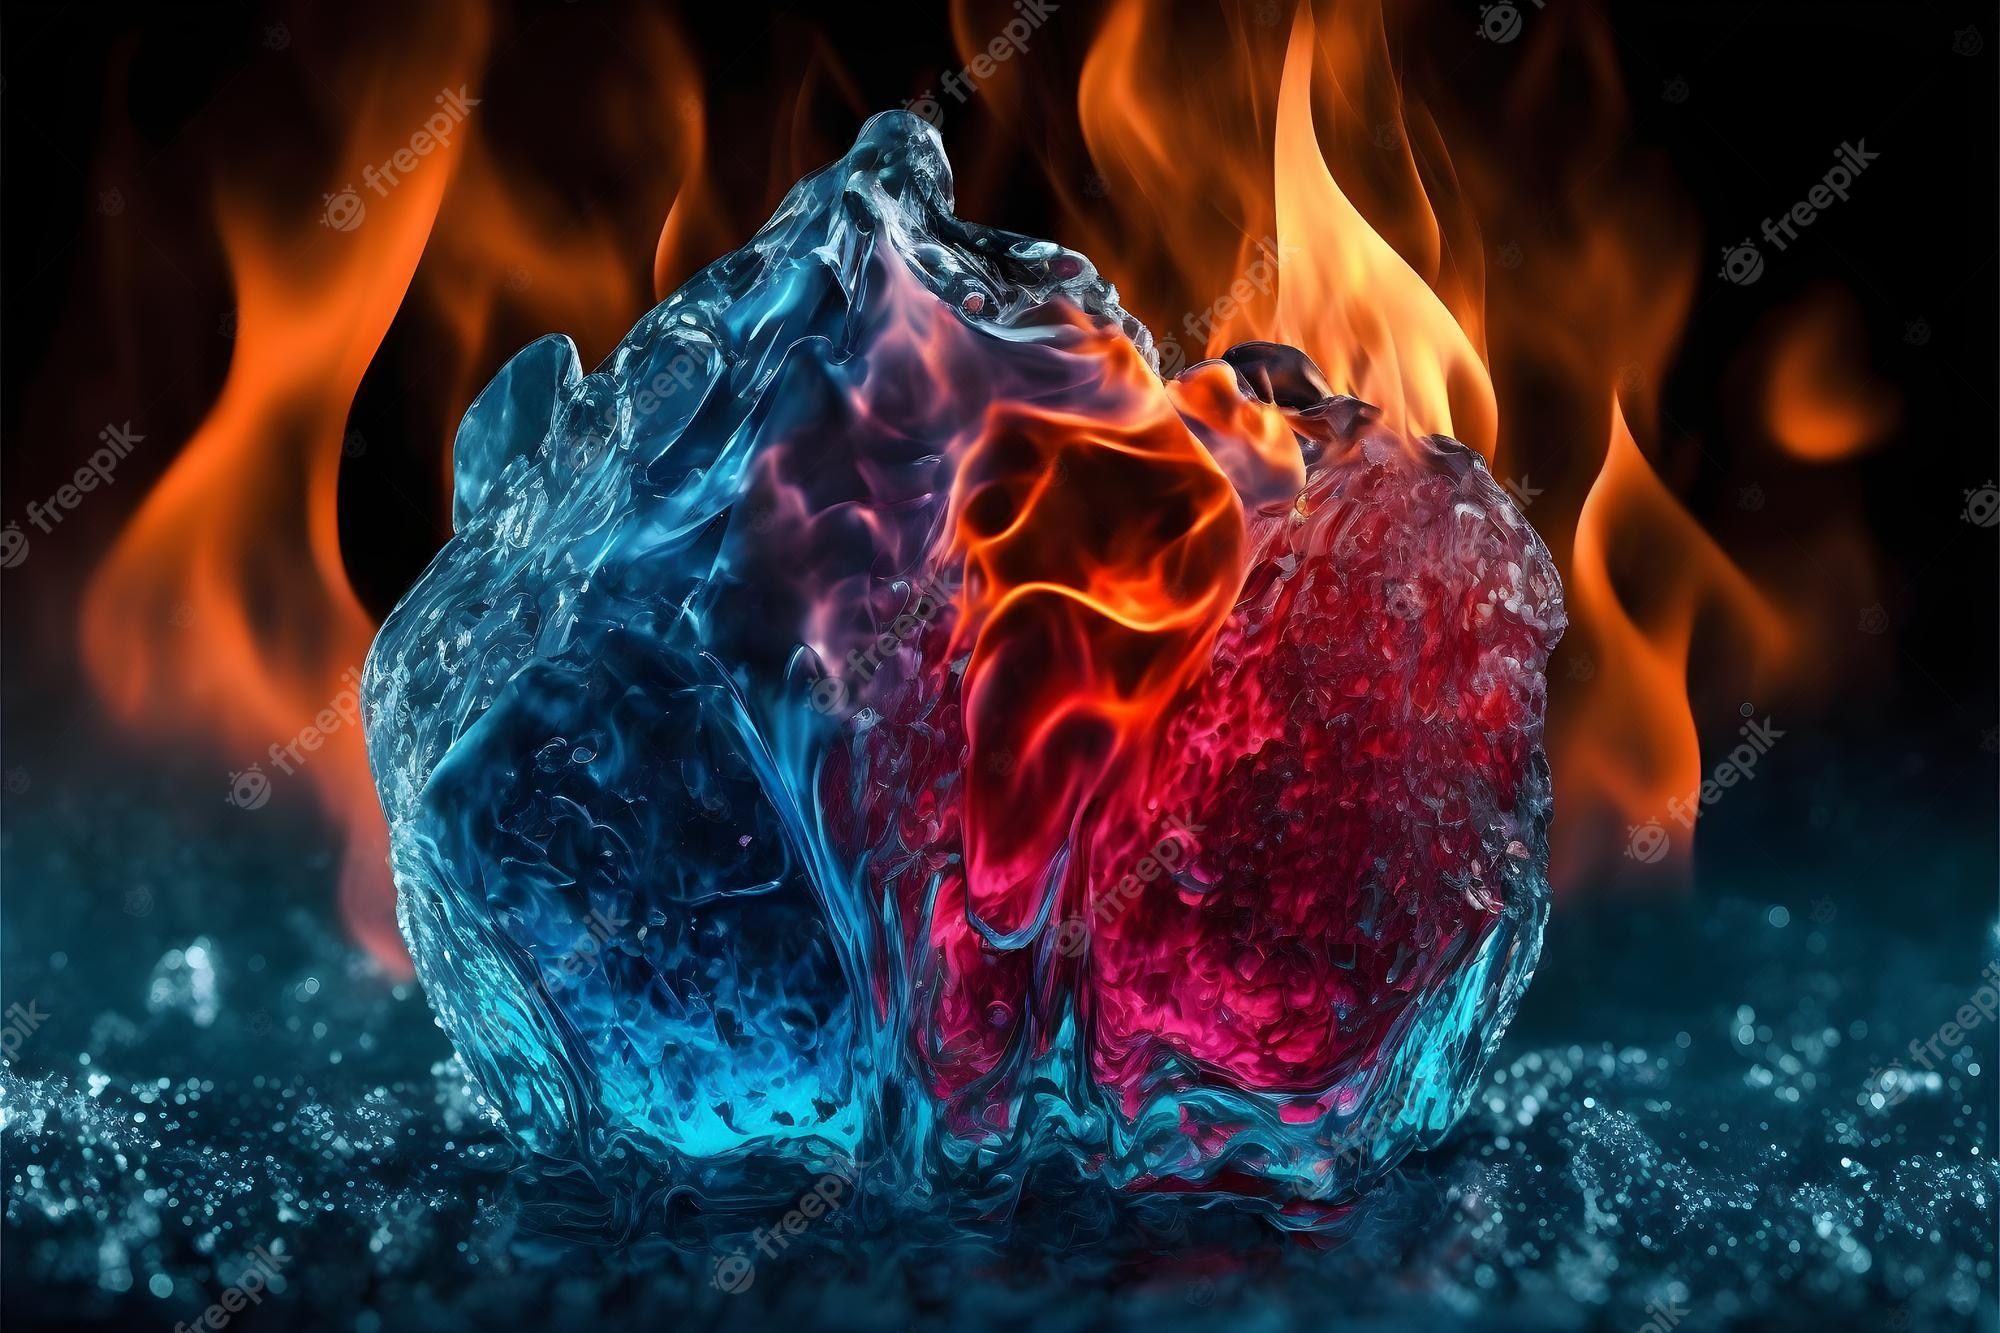  Feuer Und Eis Hintergrundbild 2000x1333. Fotos Eis Feuer, Über 62.000 hochqualitative kostenlose Stockfotos